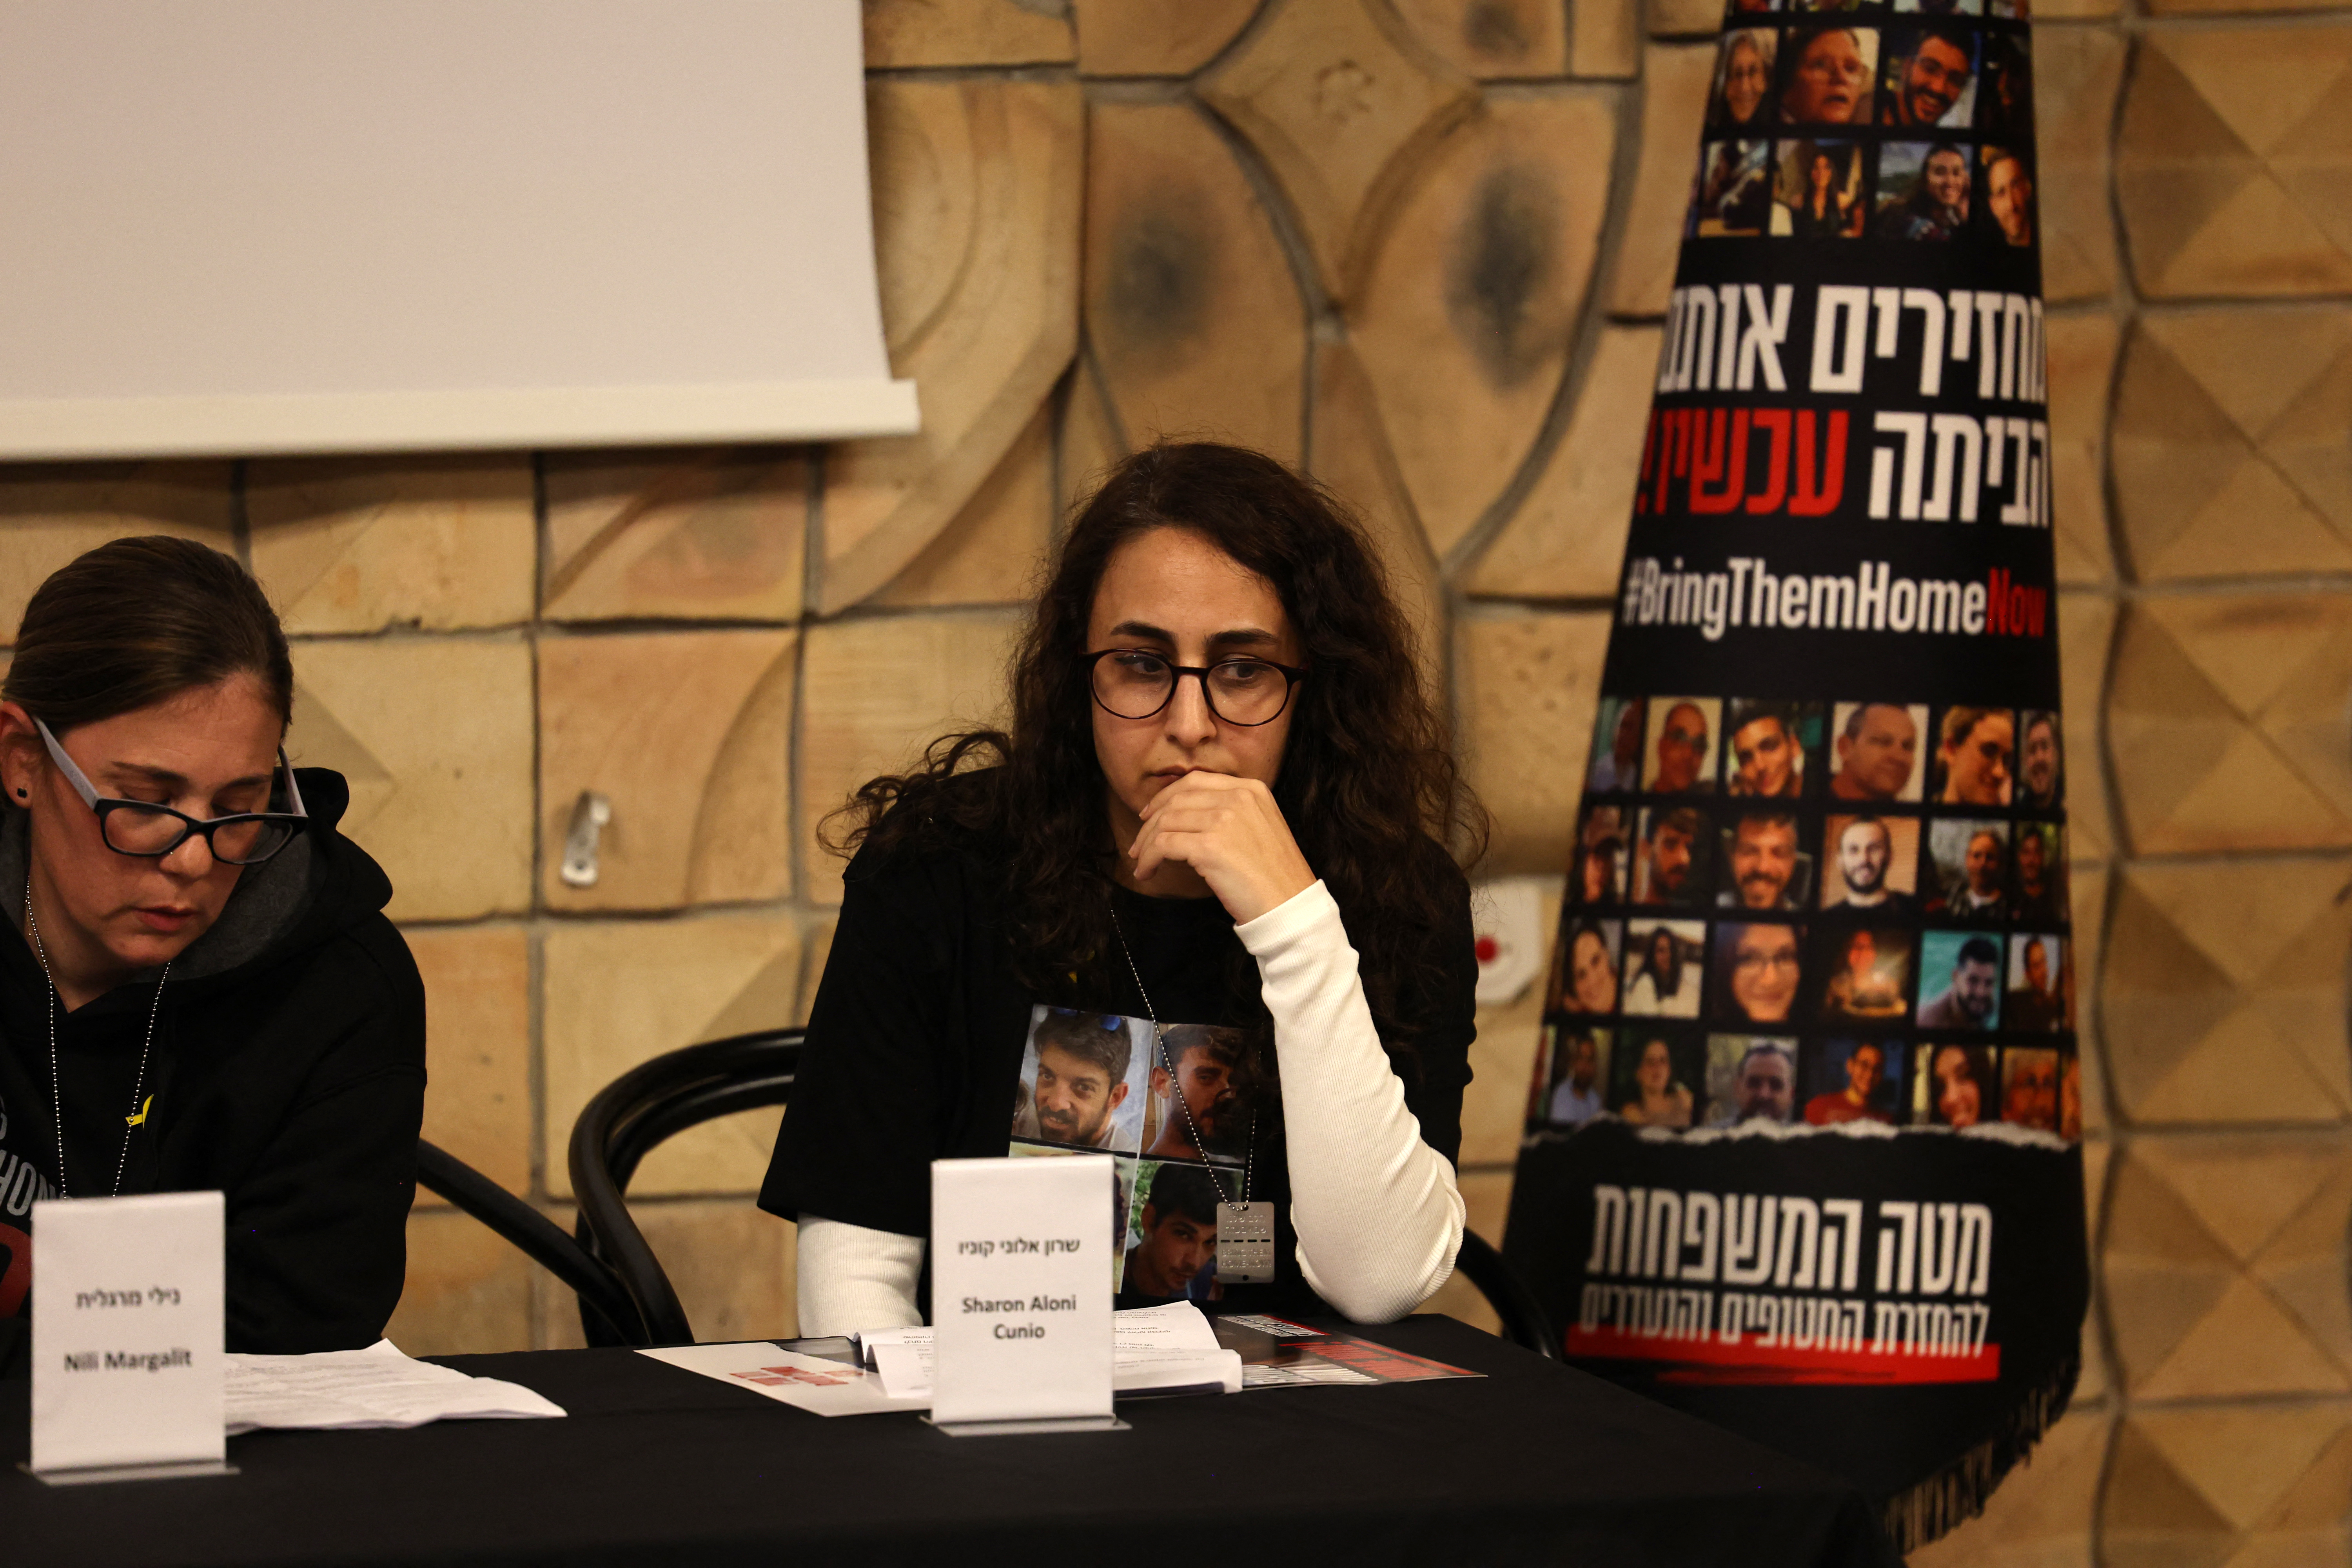 Nili Margalit (à droite) et Sharon Aloni Cunio, une autre ancienne otage du Hamas, lors d'une conférence de presse à Tel Aviv le 7 février dernier. AFP/Ahmad Gharabli